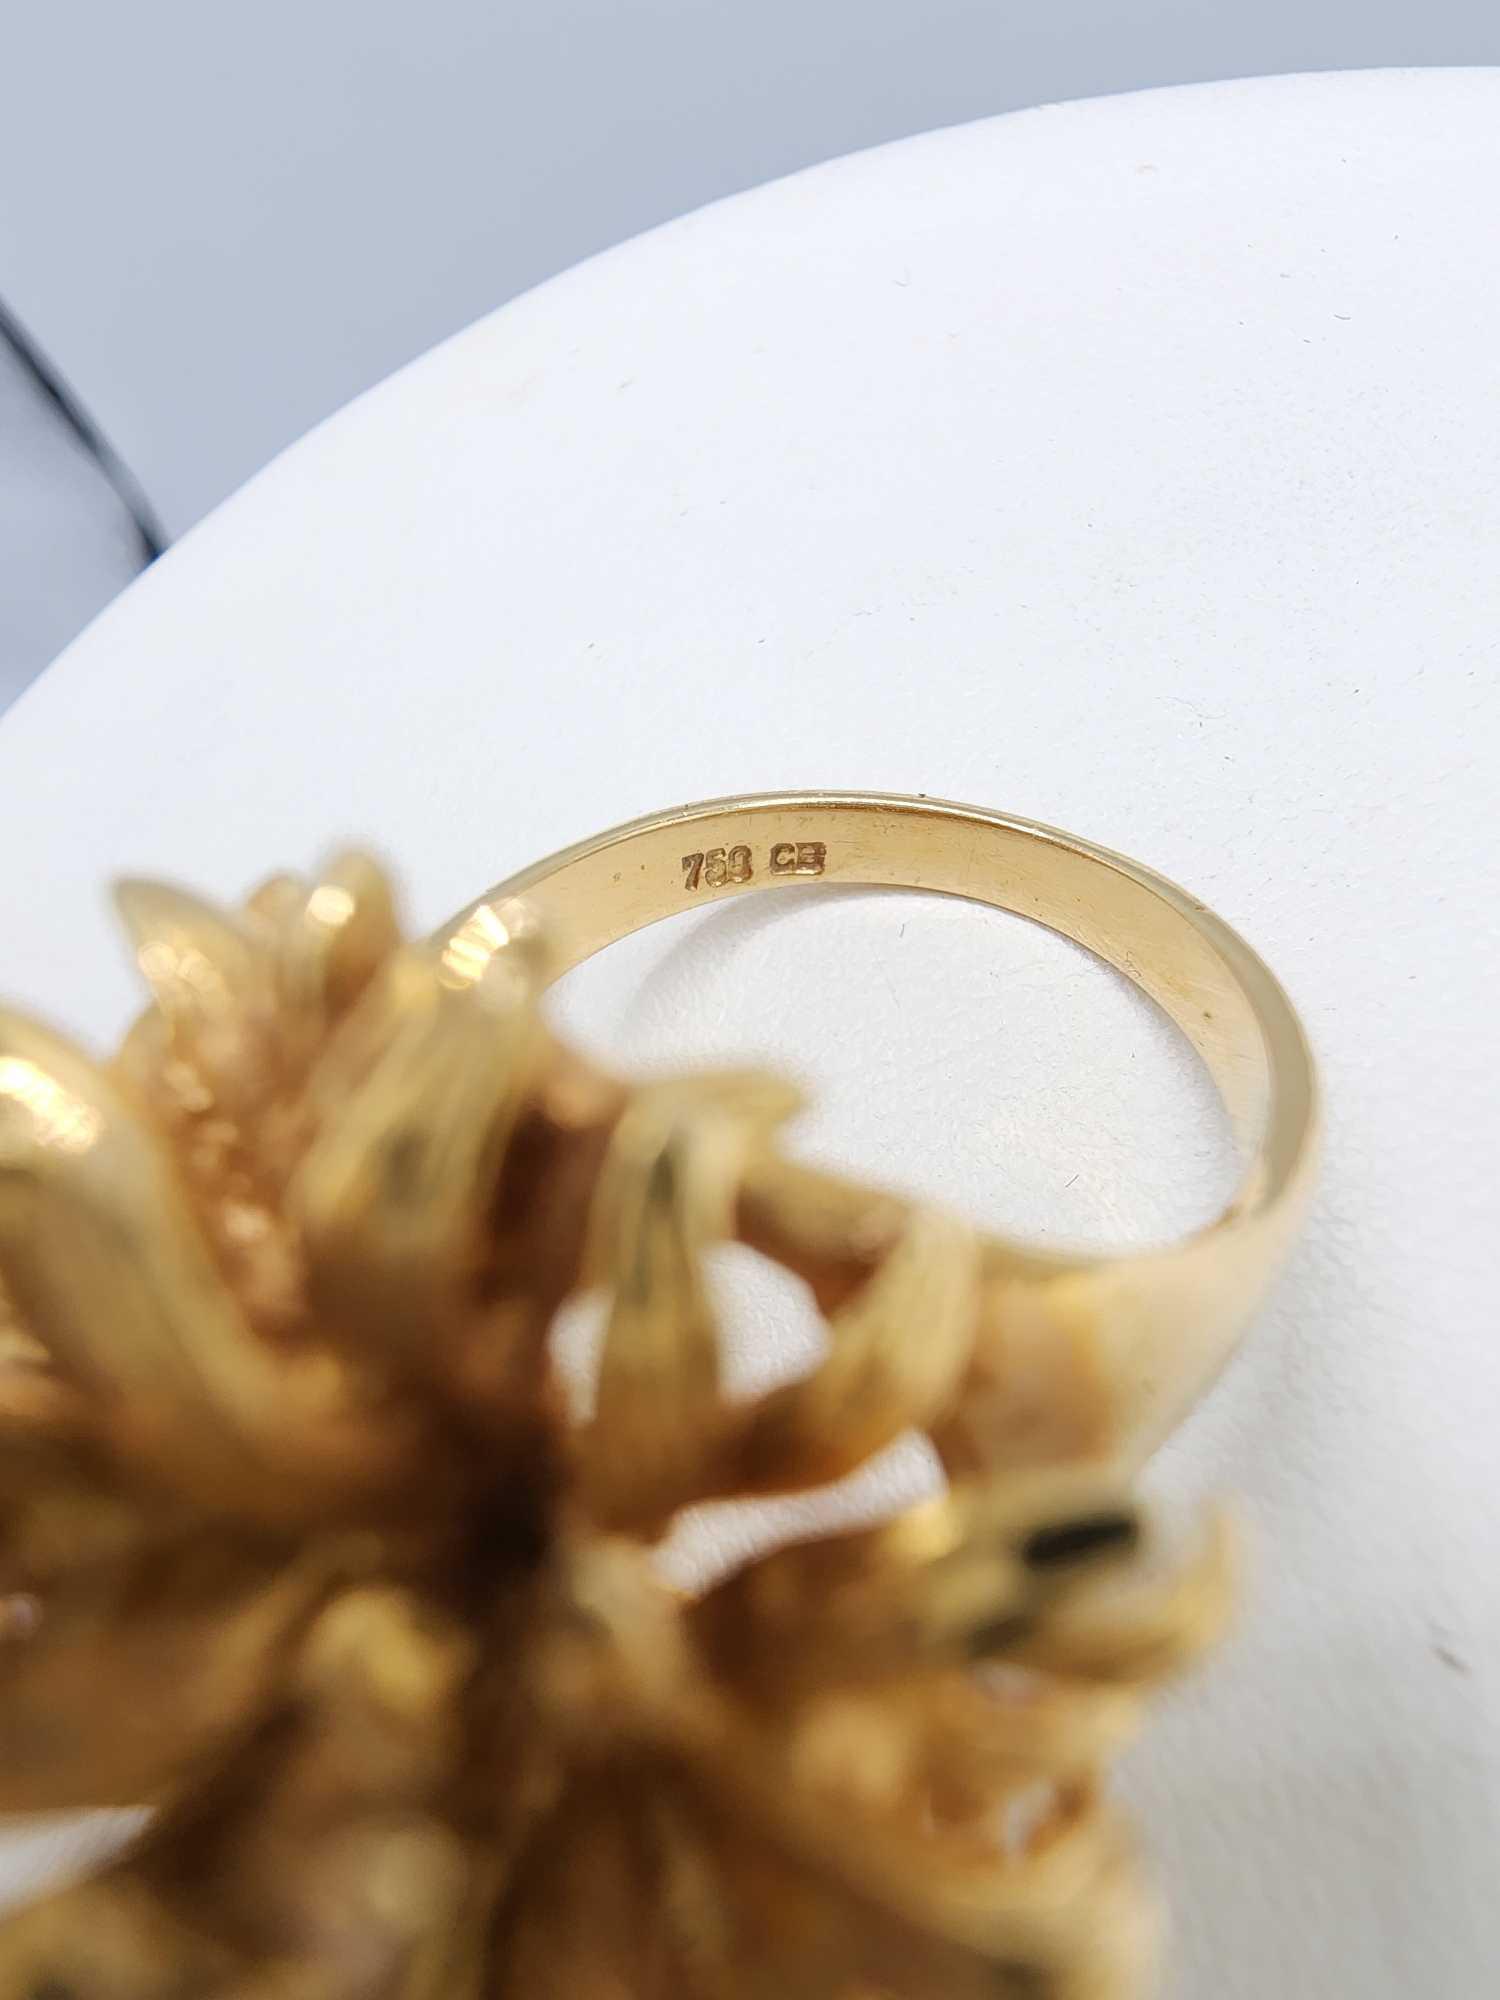 Vintage 1960s solid 18k gold flower blossom ring, 13.4 grams